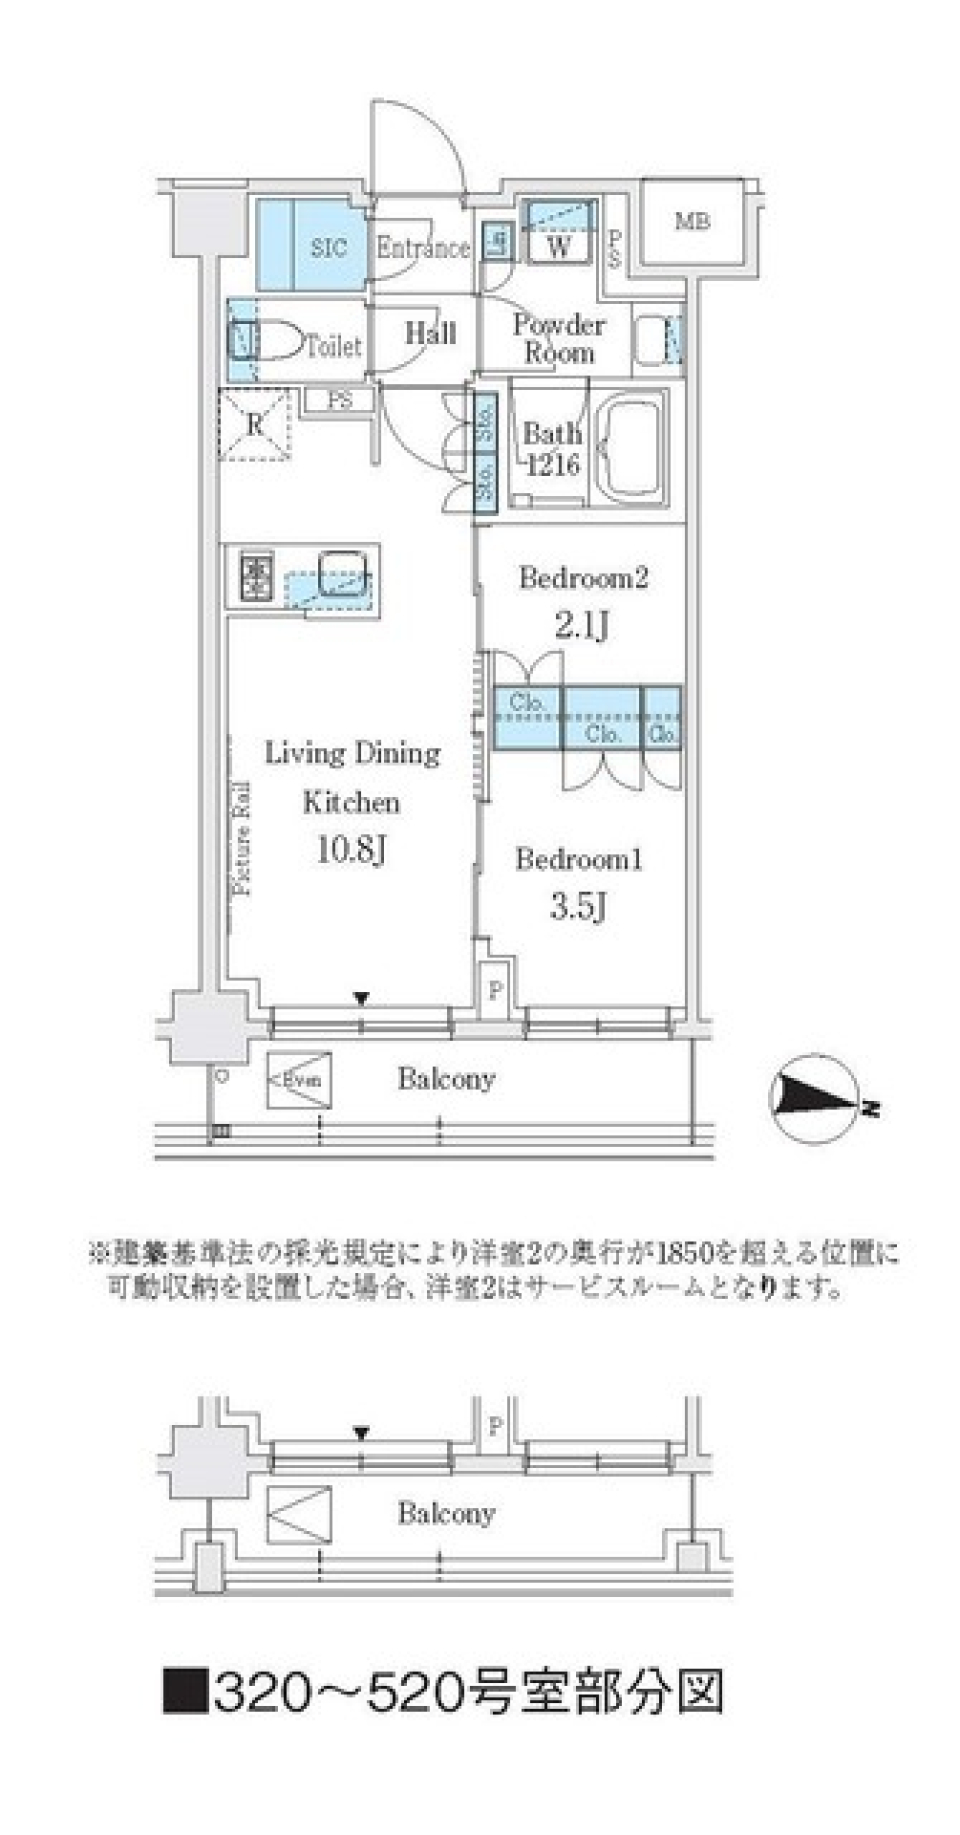 Ｊ．ＧＲＡＮ　Ｃｏｕｒｔ　品川西大井ＷＥＳＴ　420号室の間取り図